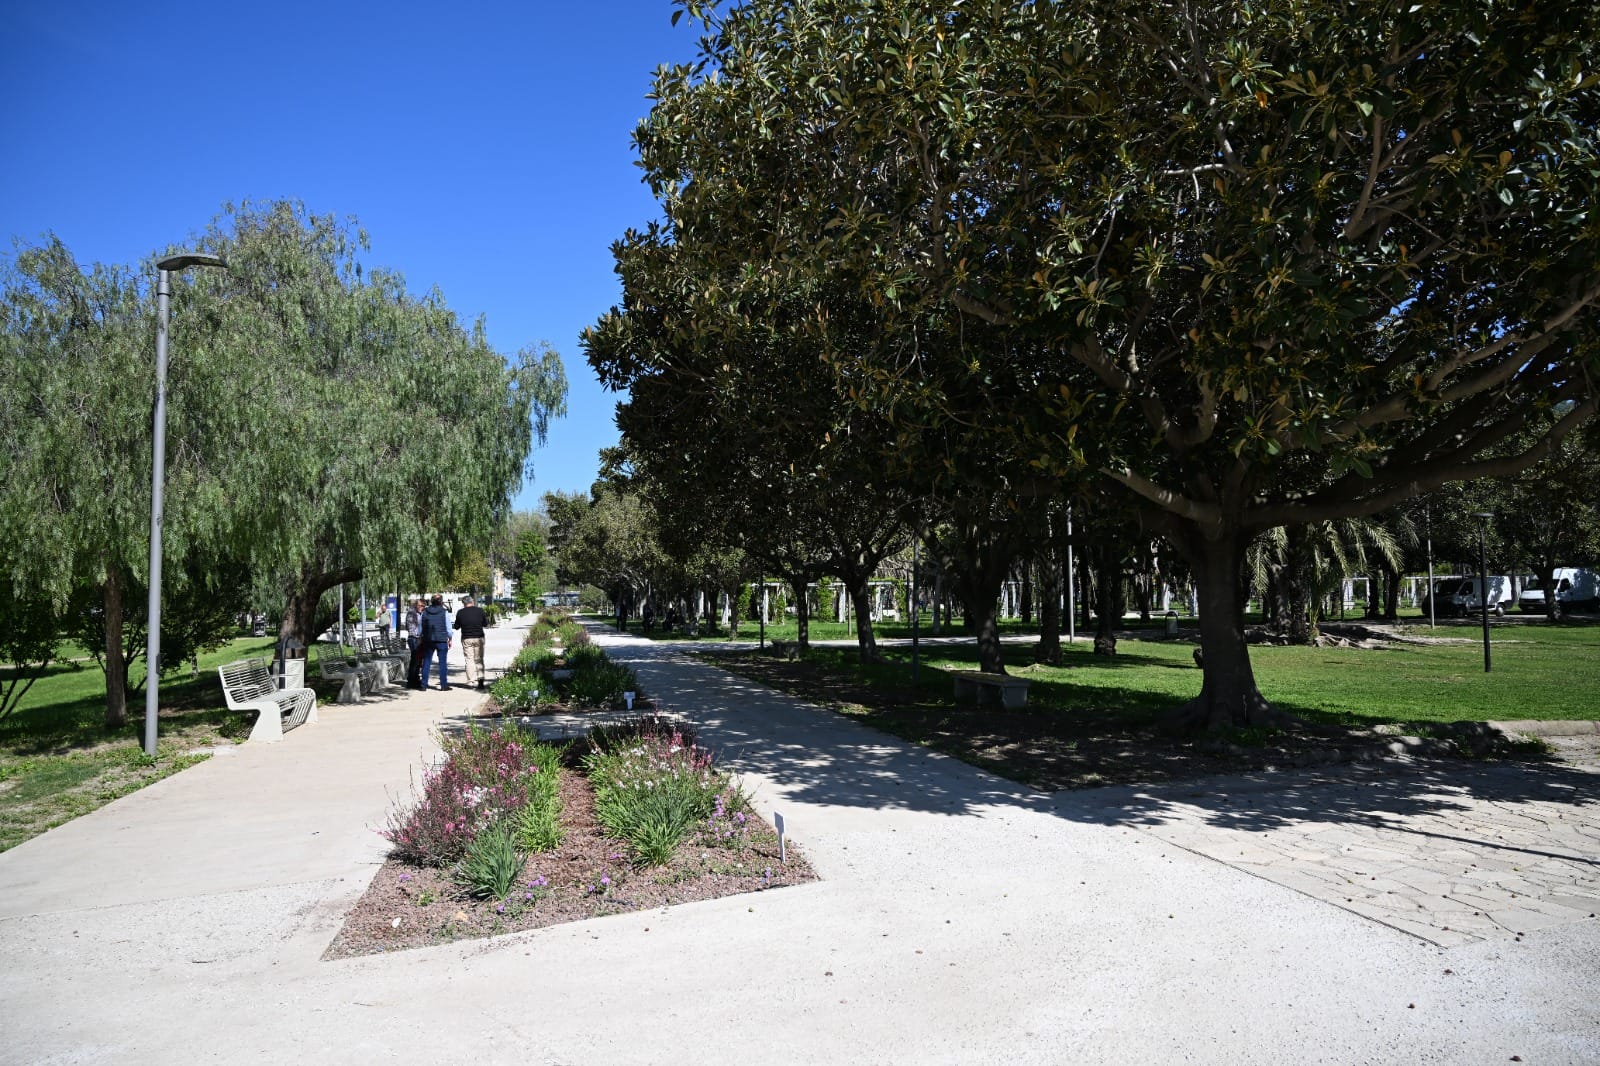   Parco del Mercatello
